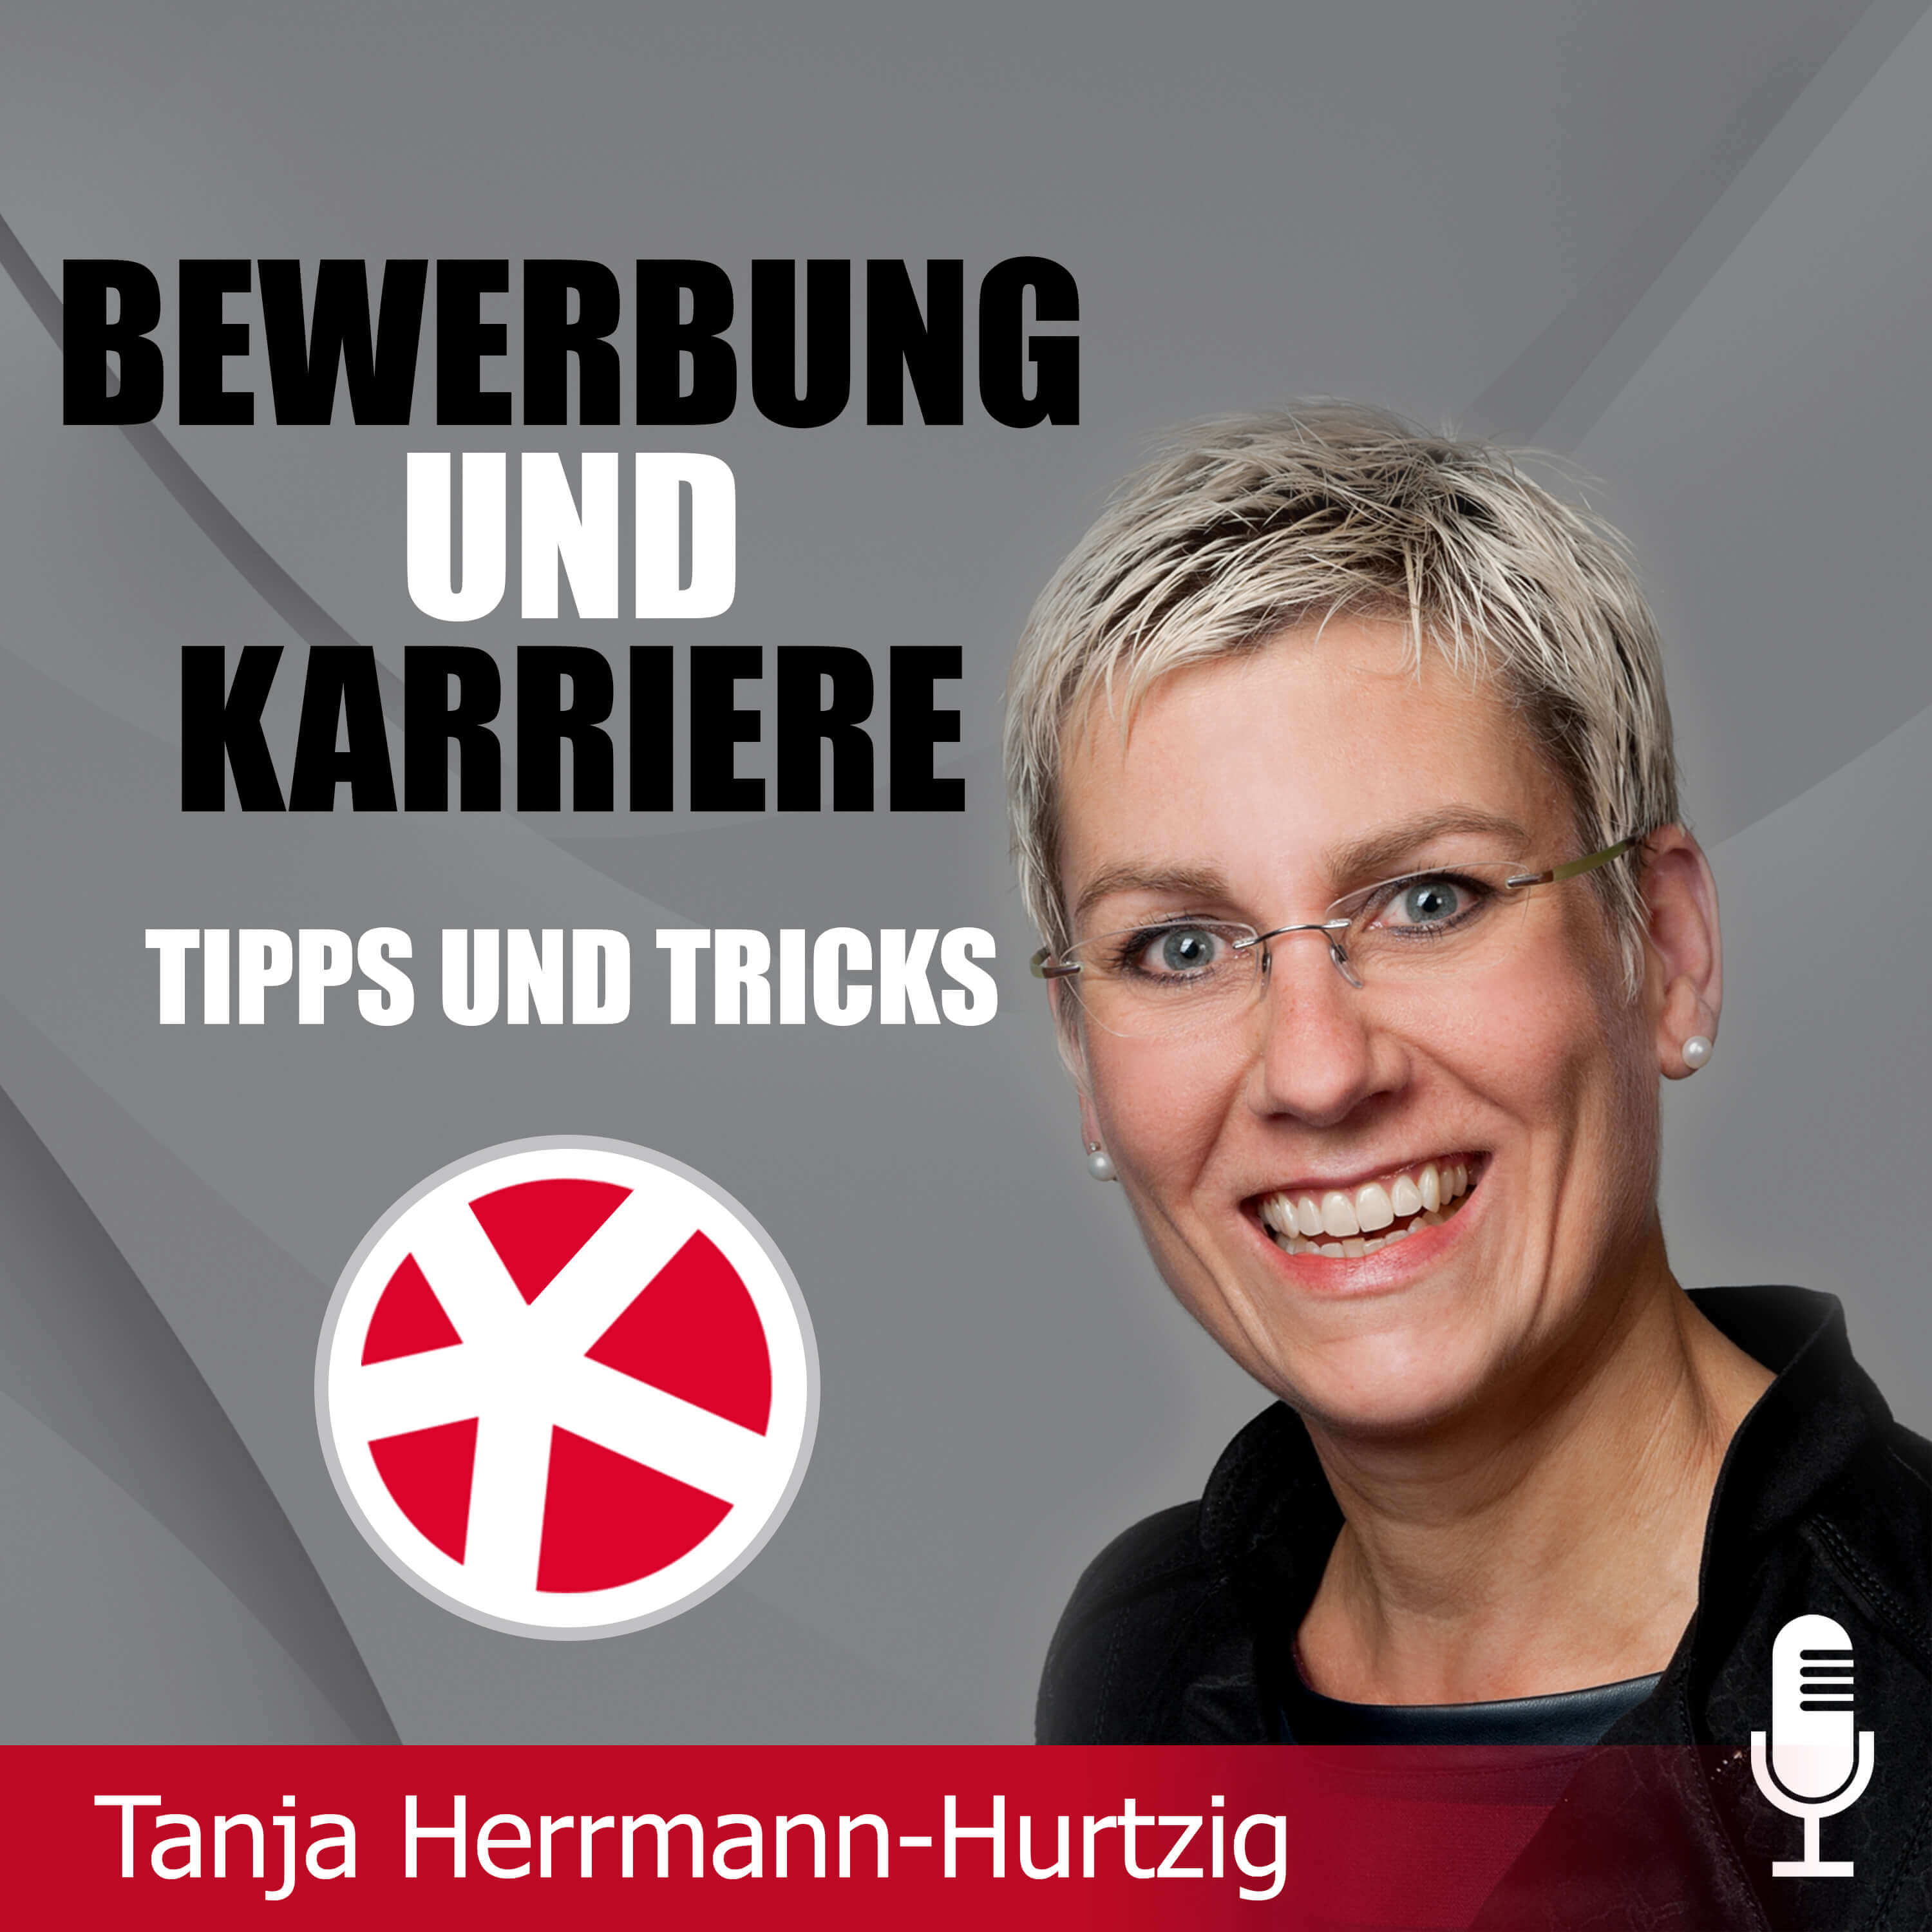 Karriere und Bewerbung - Tanja Herrmann-Hurtzig